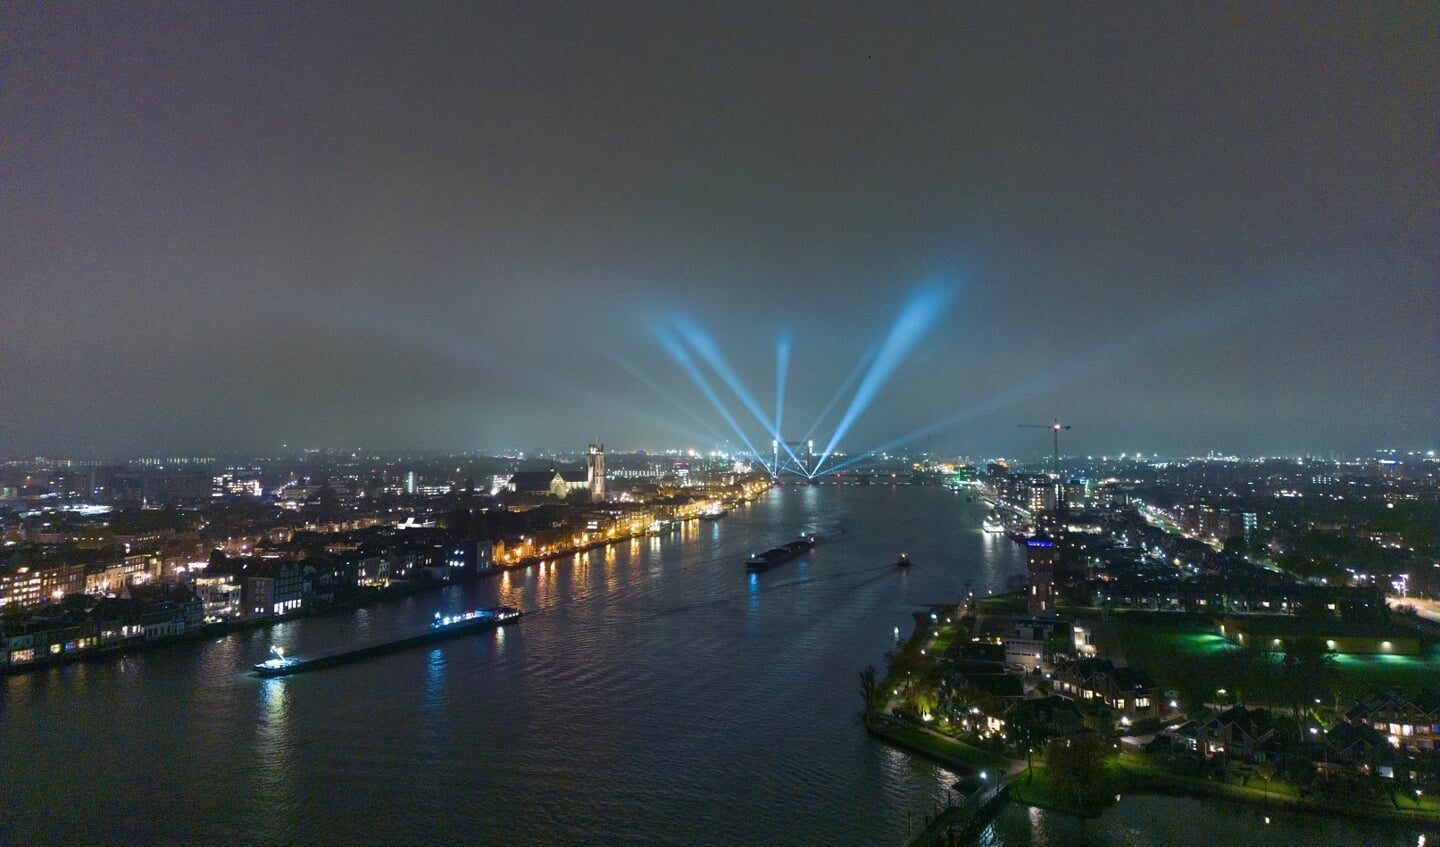 Lichtspektakel zet bruggen en Drierivierenpunt Drechtsteden regio in de spotlights